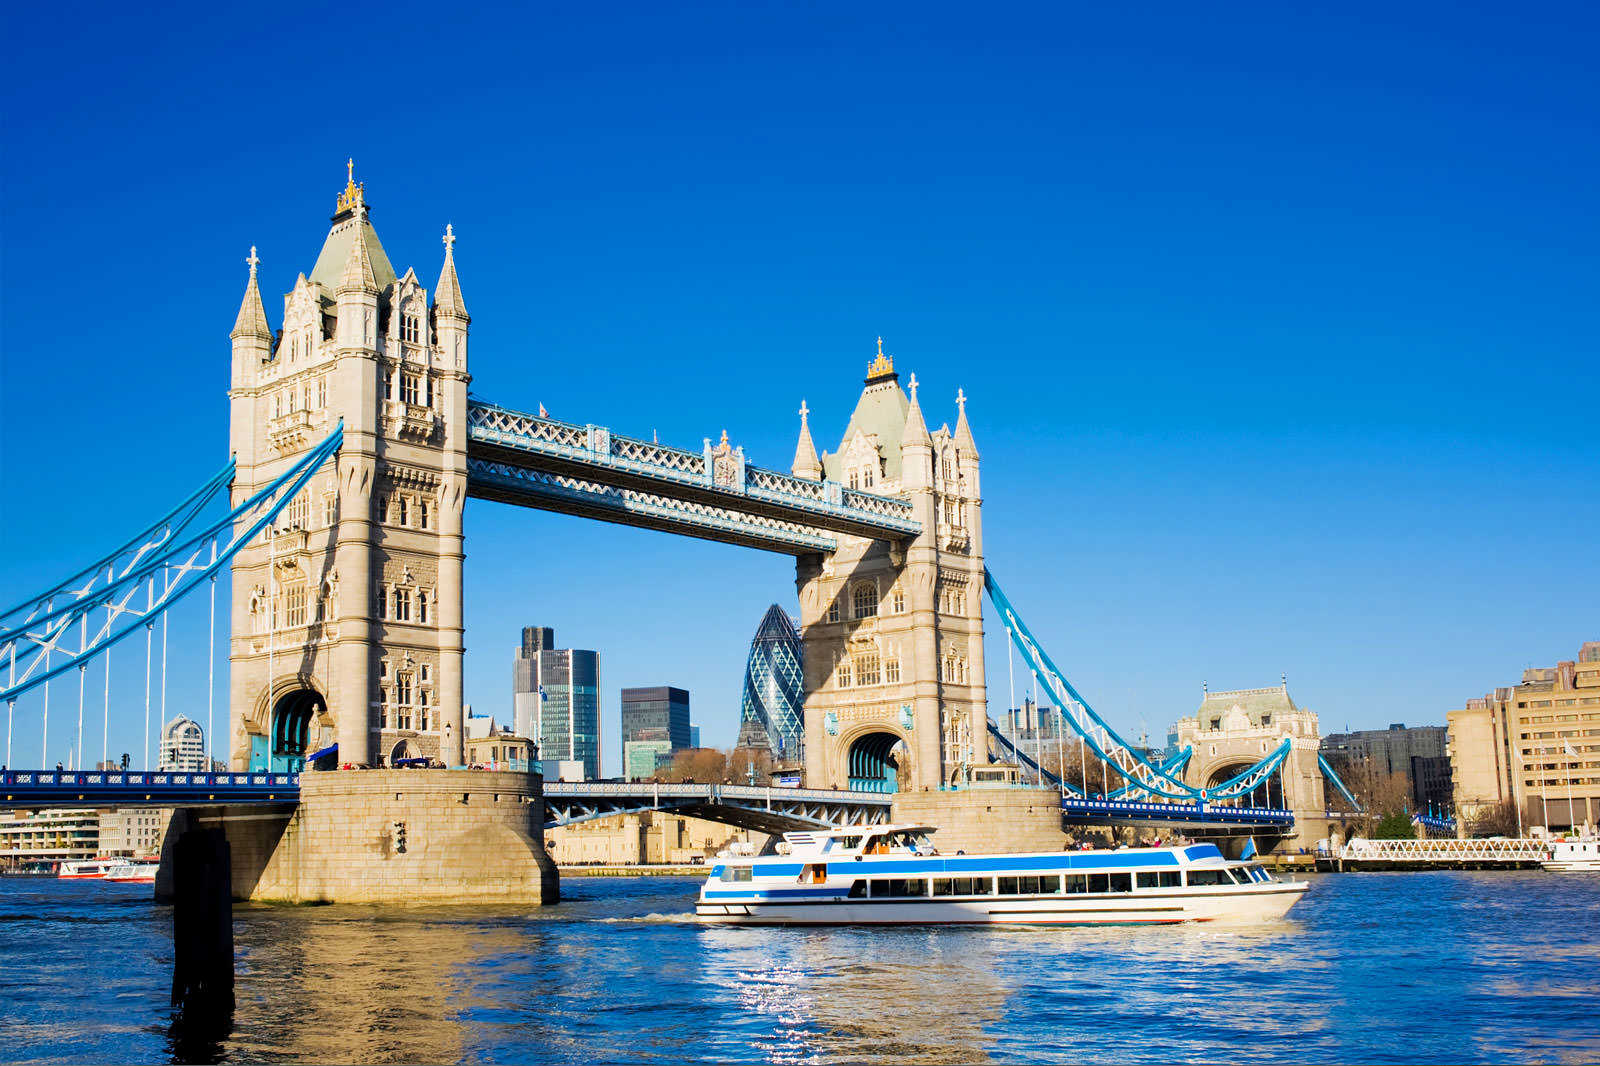 Sube a bordo de uno de los barcos que van de Westminster a la Torre de Londres